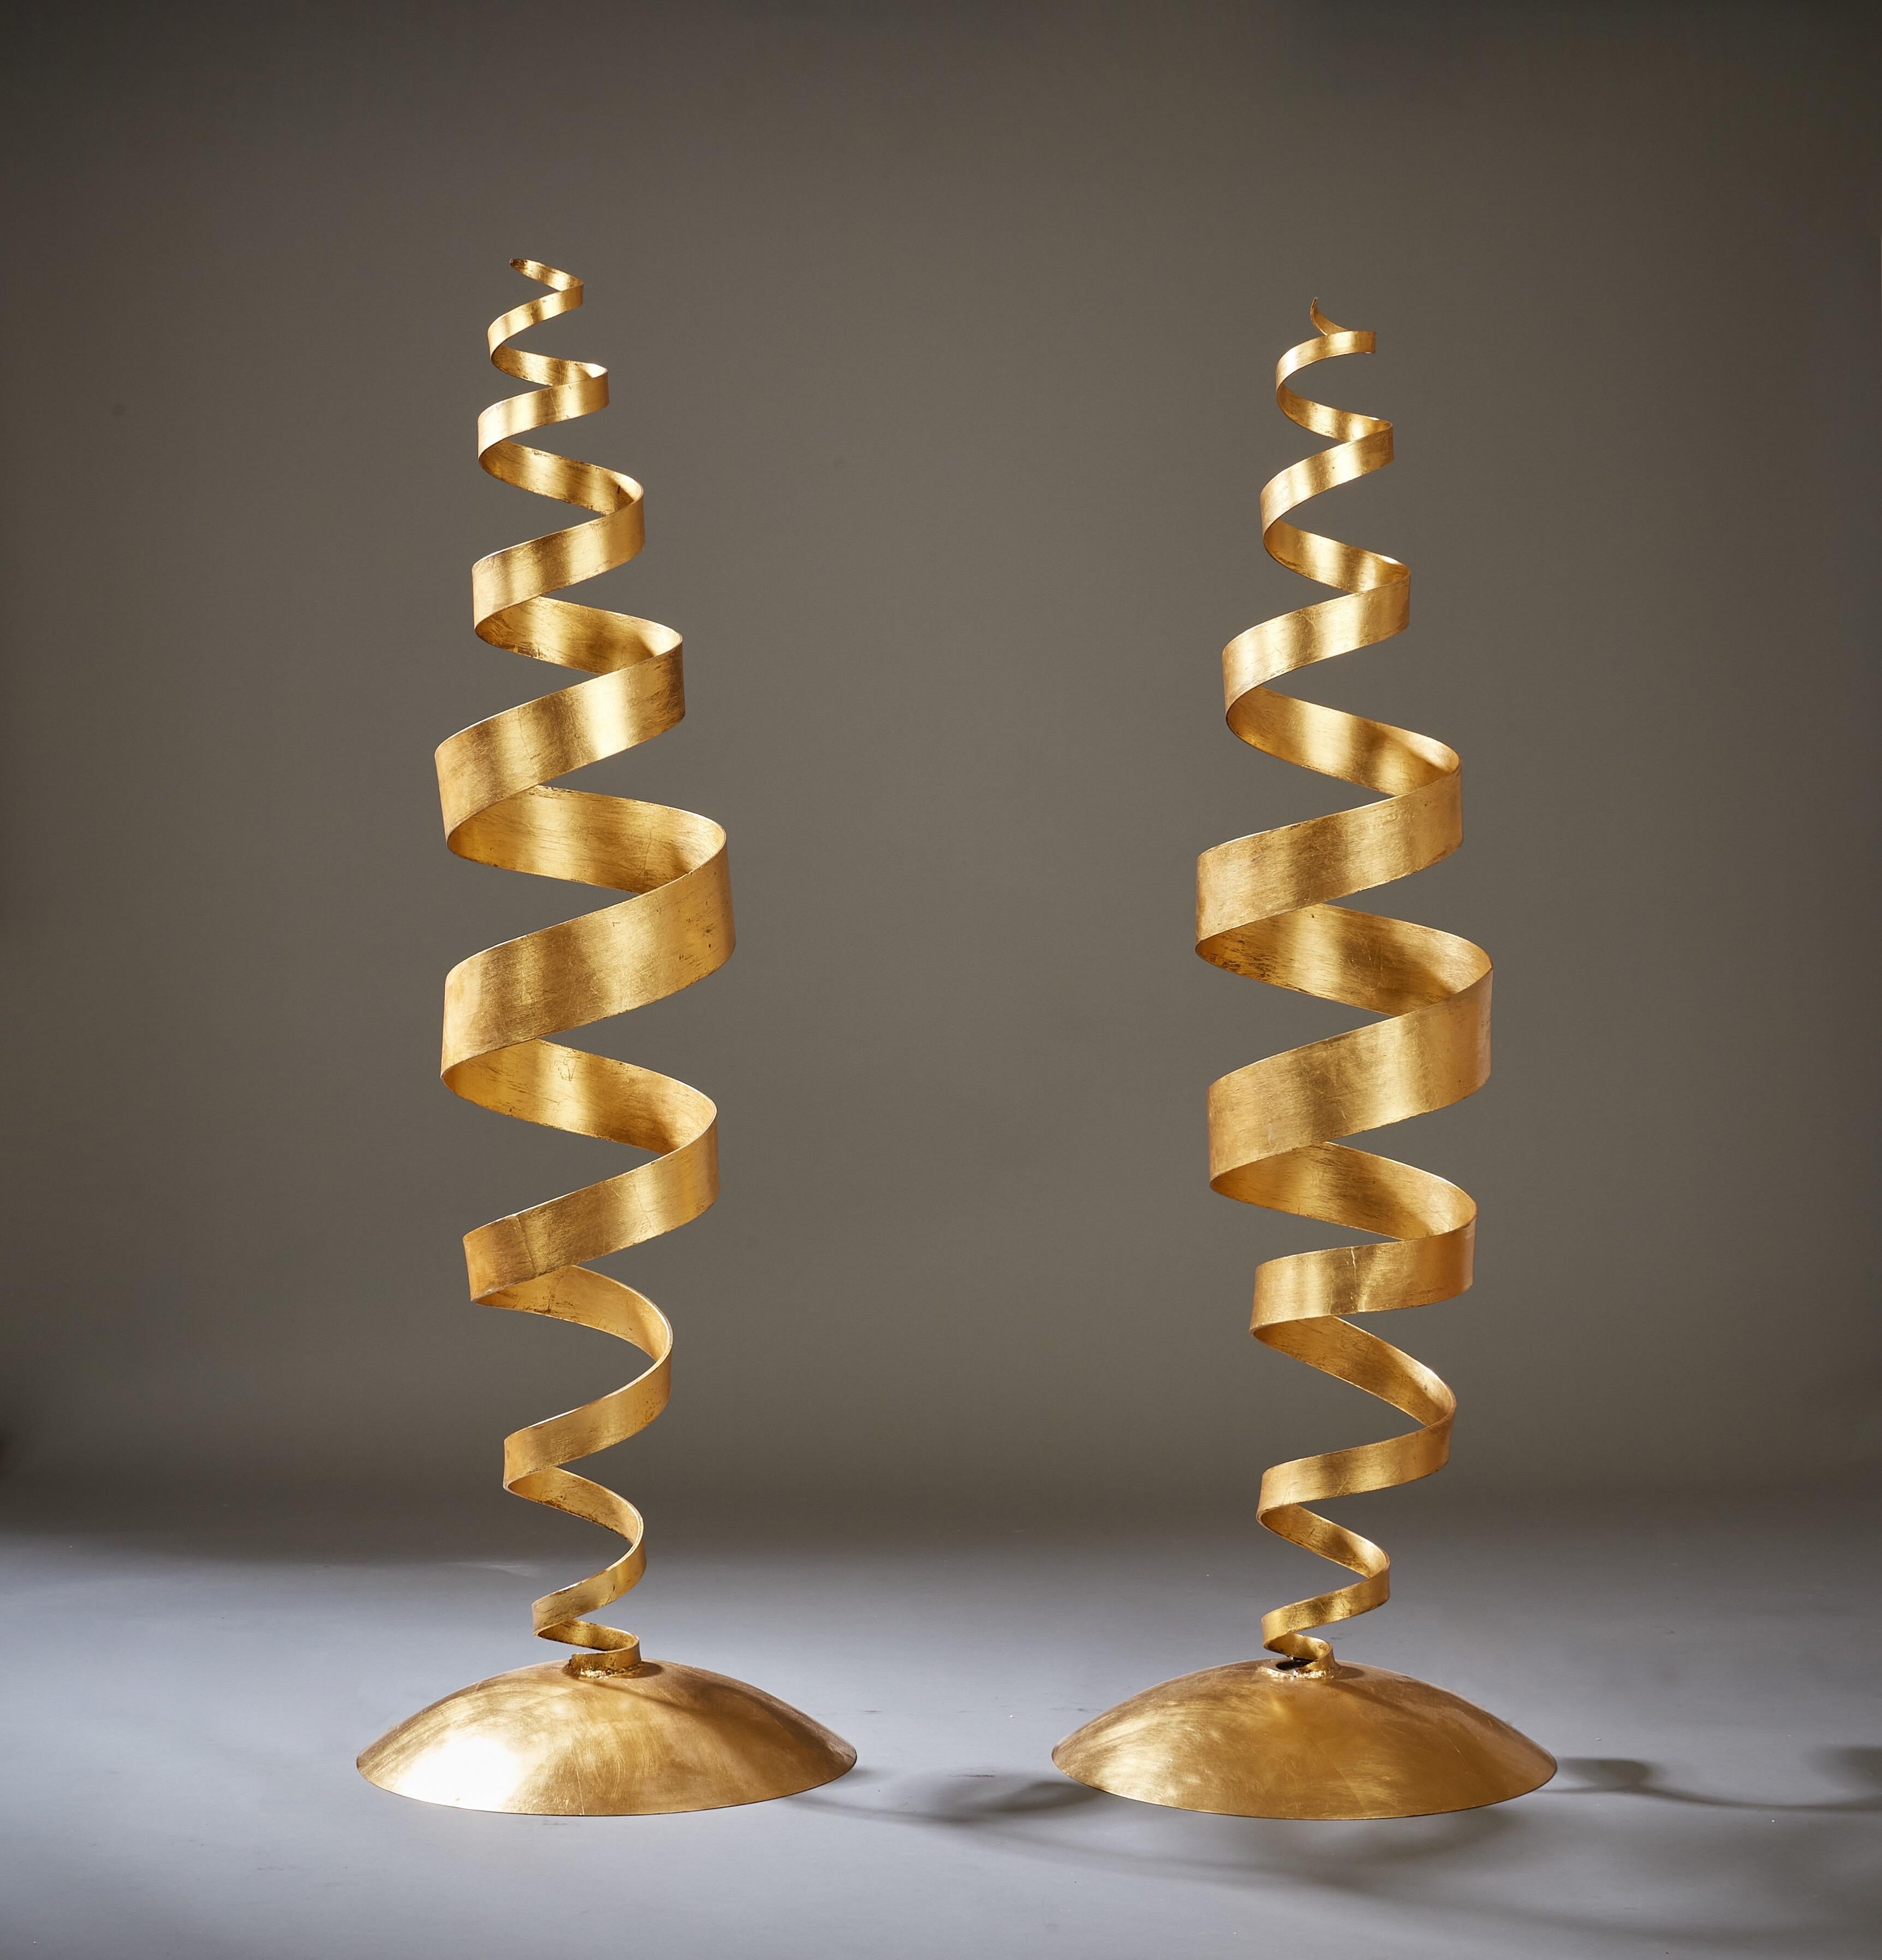 Tom Dixon (geb. 1959)

Ein frühes, sehr lebendiges Paar spiralförmiger Stehlampen des Designers Tom Dixon OBE aus gedrehtem Stahl mit handaufgetragenem Blattgold. Diese interaktiven, skulpturalen Werke sind absichtlich biegsam, da sie aus